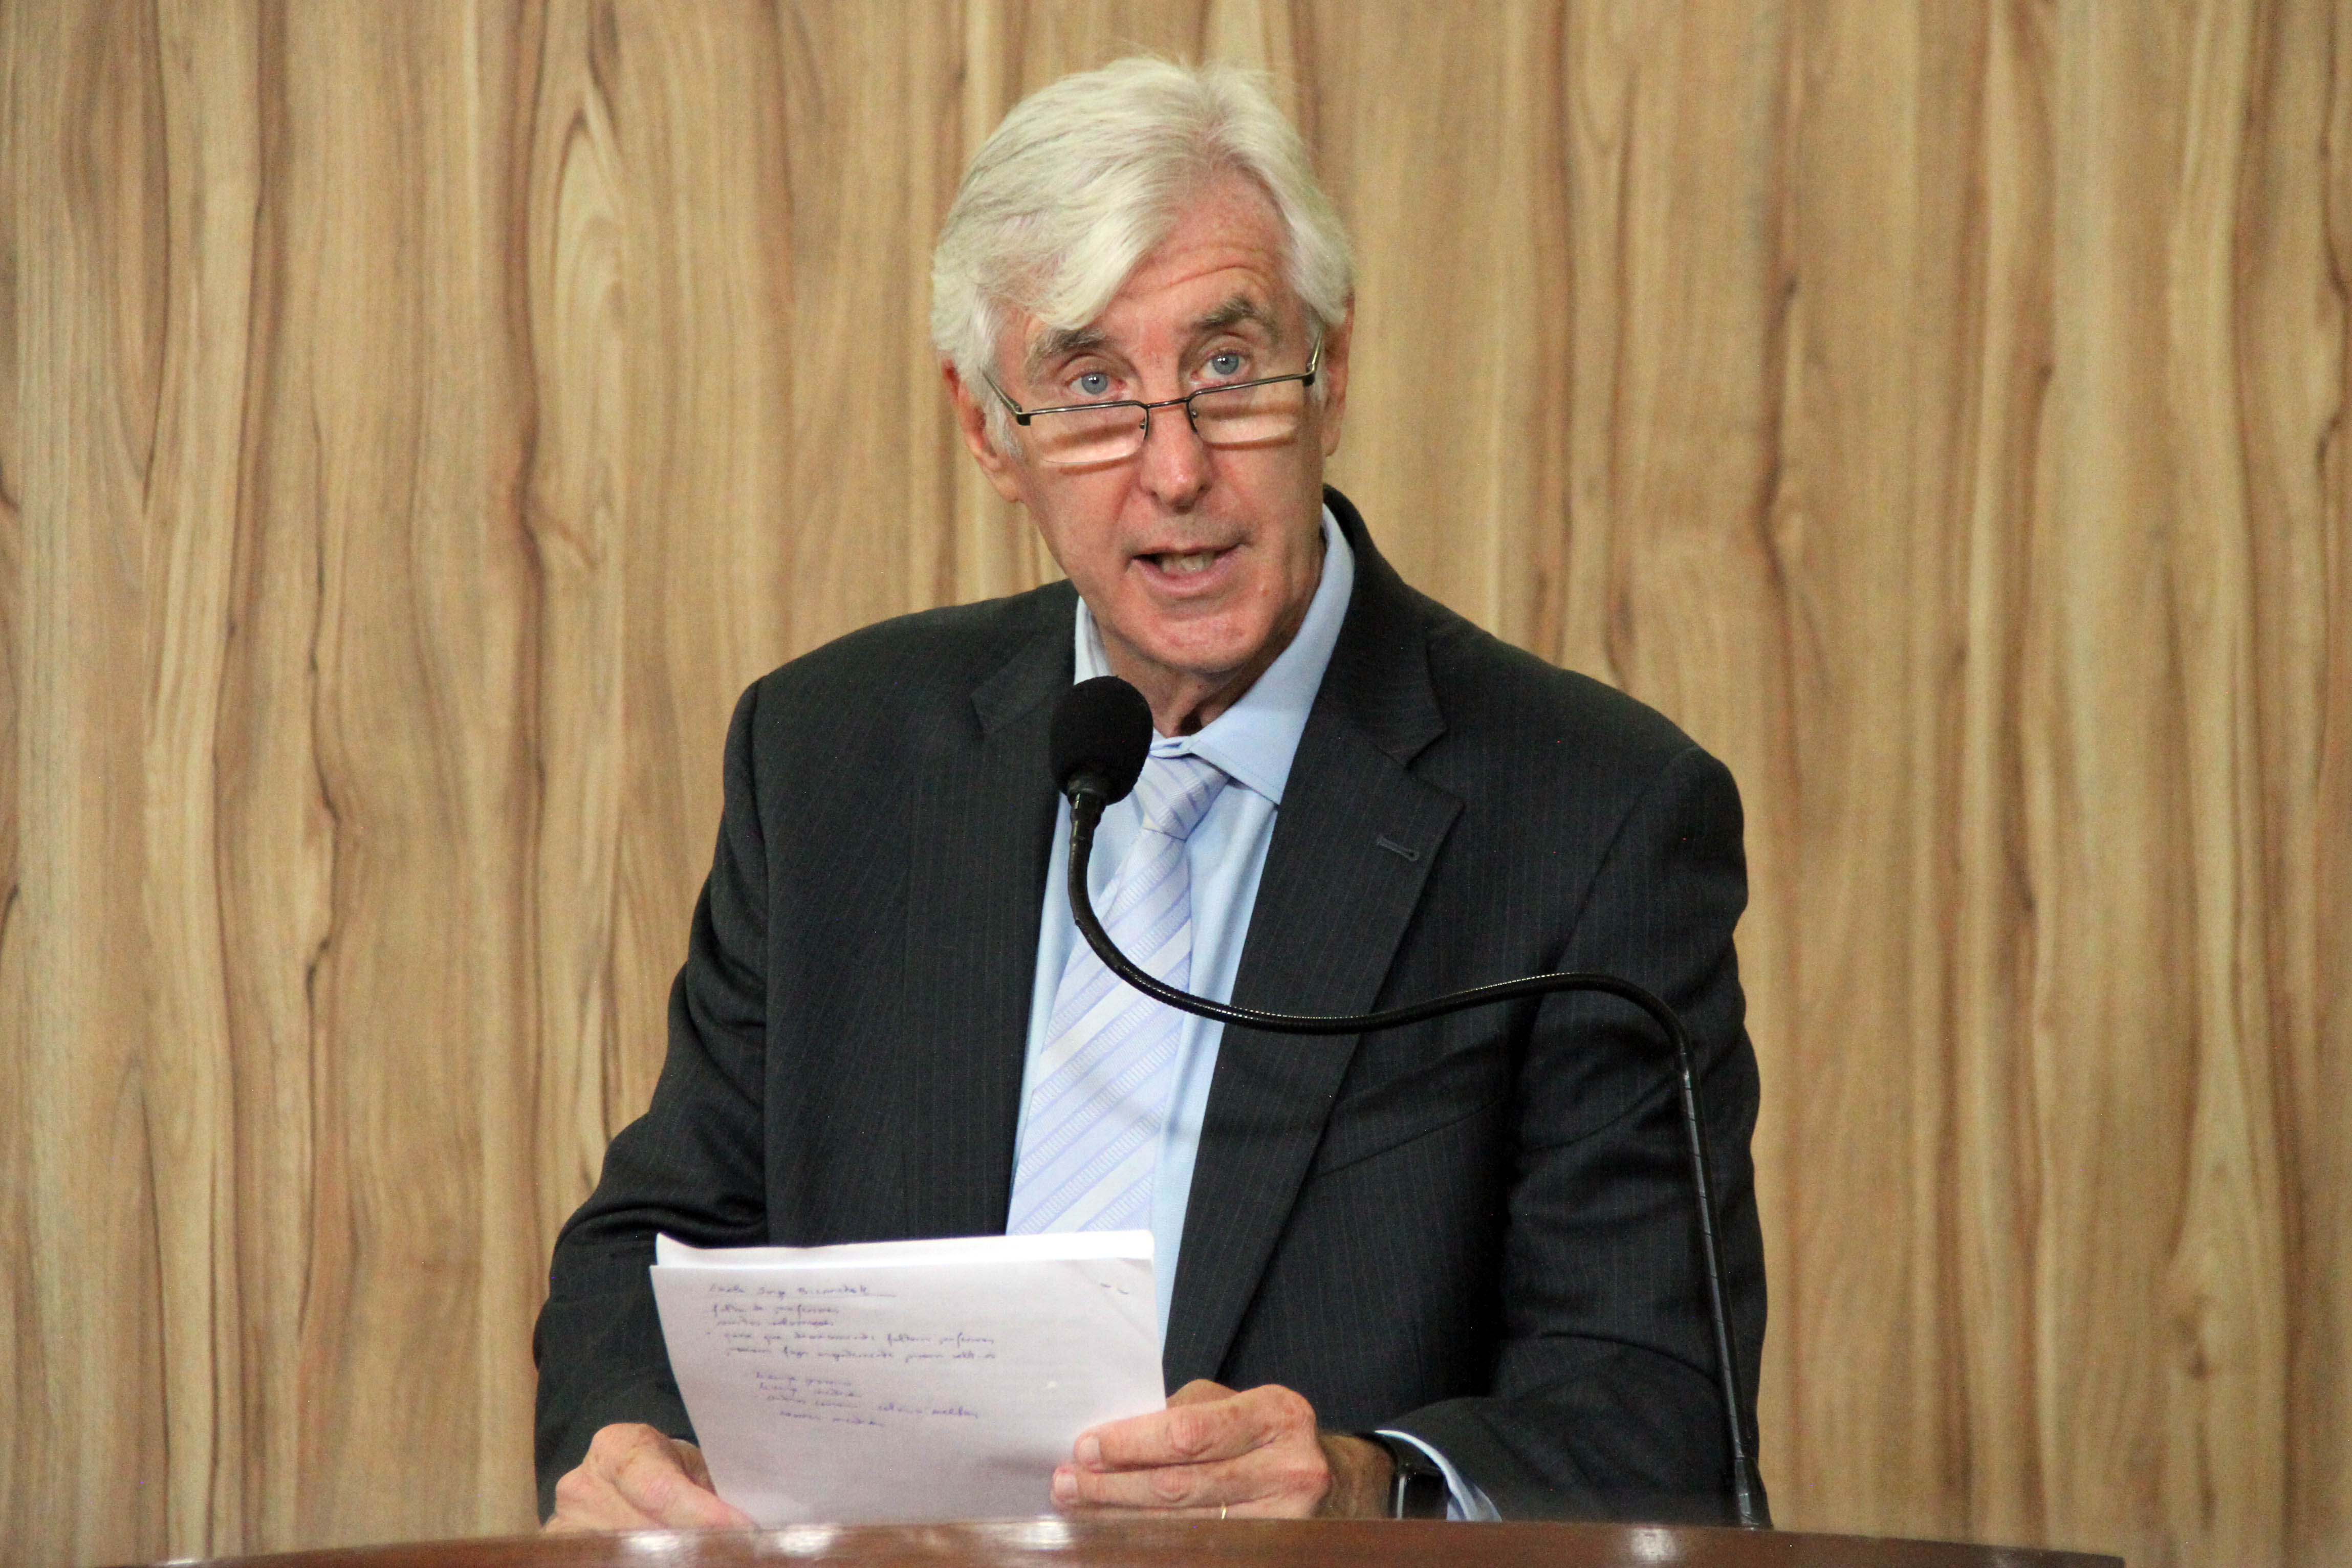 #PraCegoVer: Foto mostra o vereador Mayr discursando na tribuna da Câmara. Ele segura um documento nas mãos.